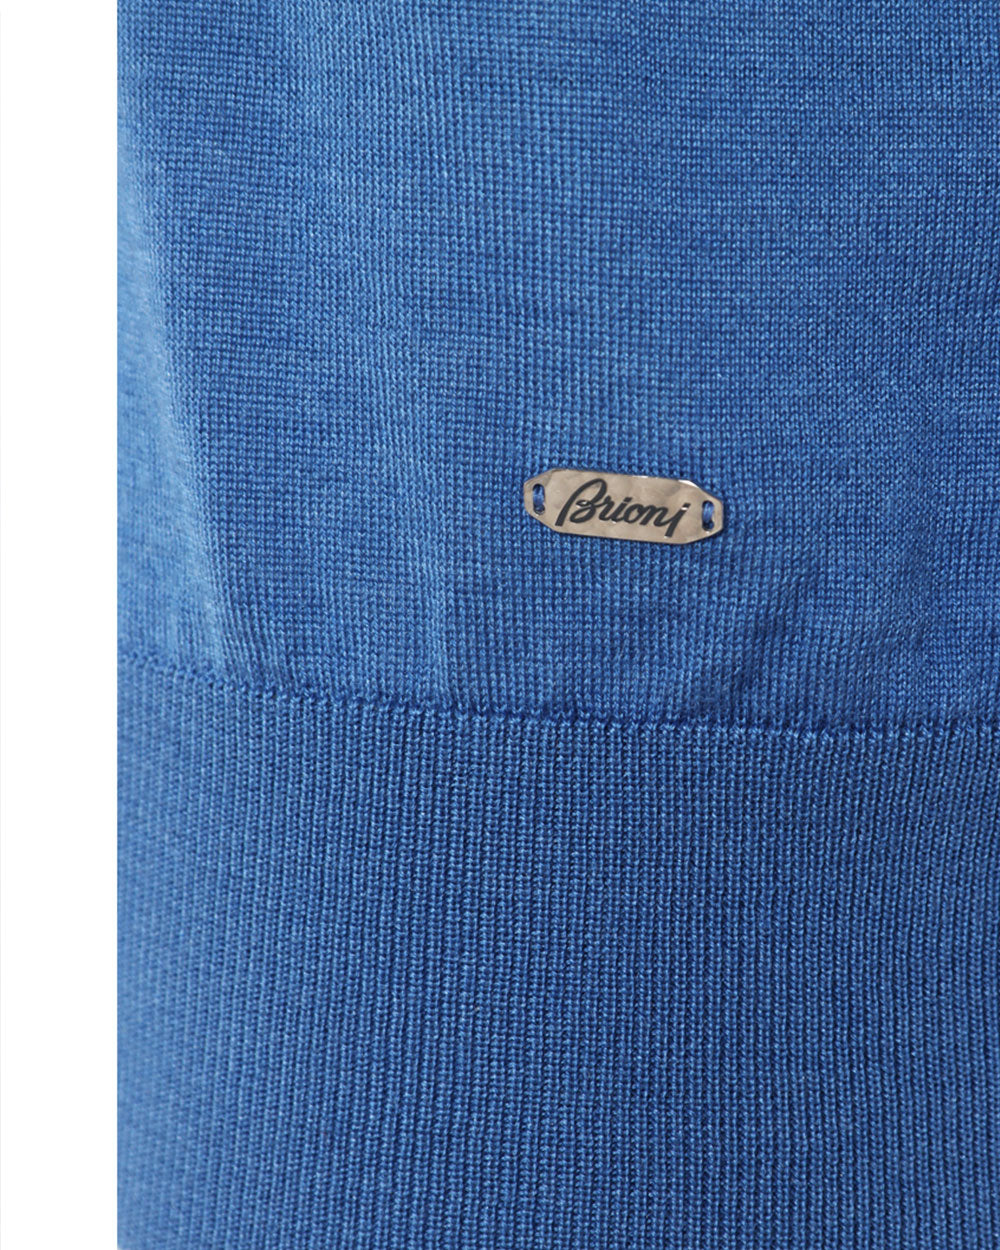 Bluette Cashmere Blend Quarter Zip Sweater